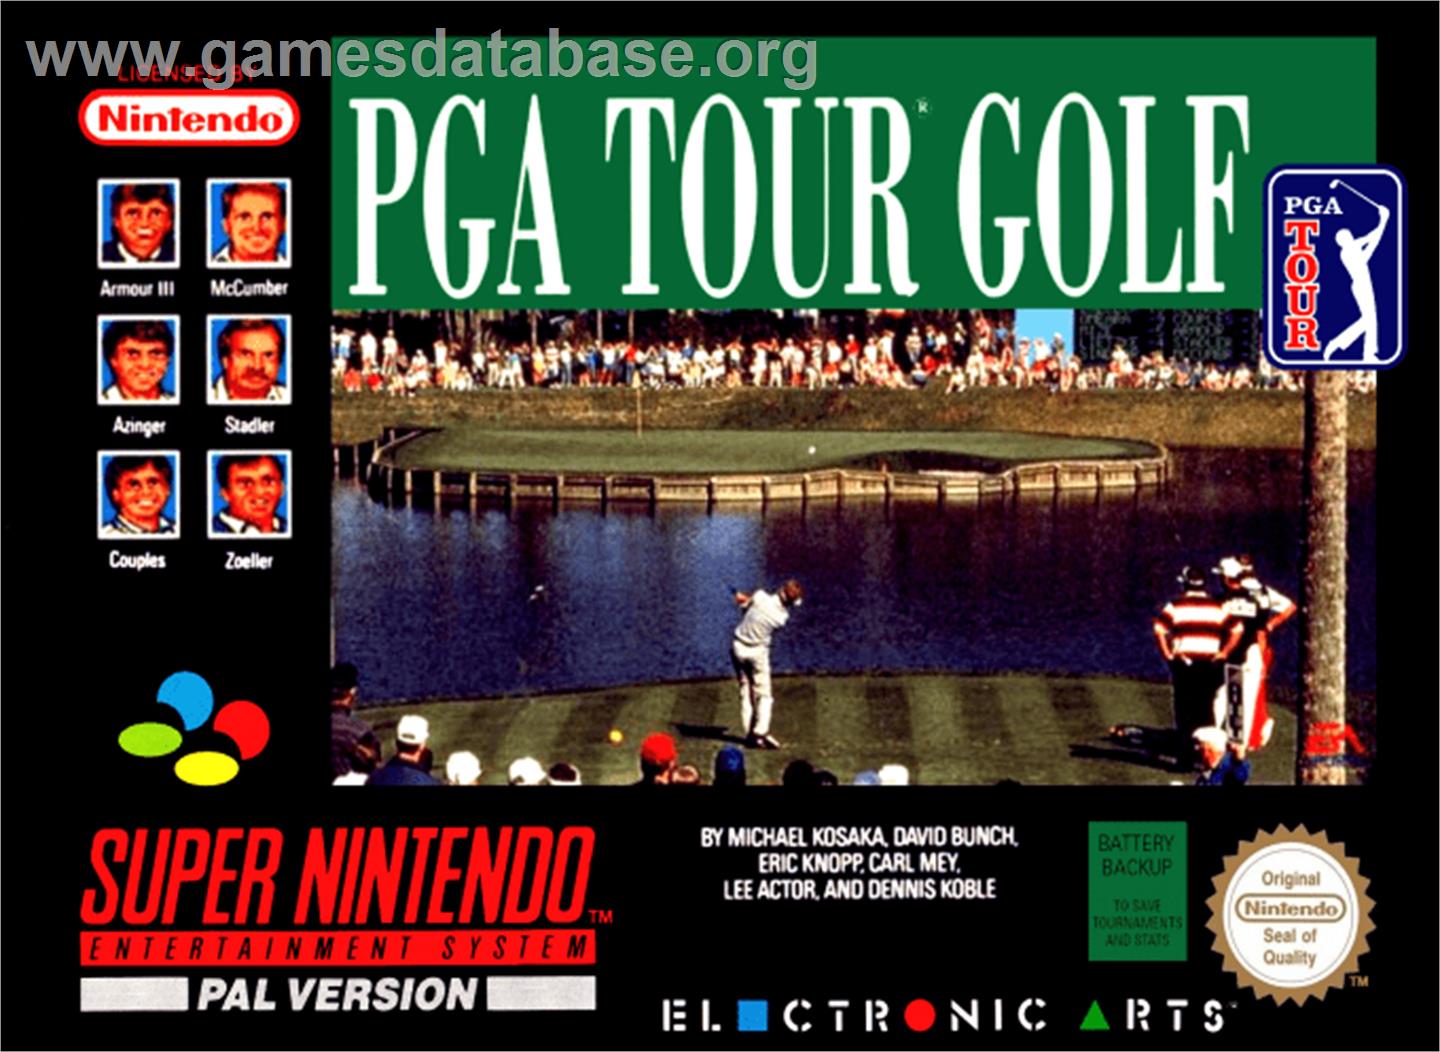 PGA Tour Golf - Nintendo SNES - Artwork - Box